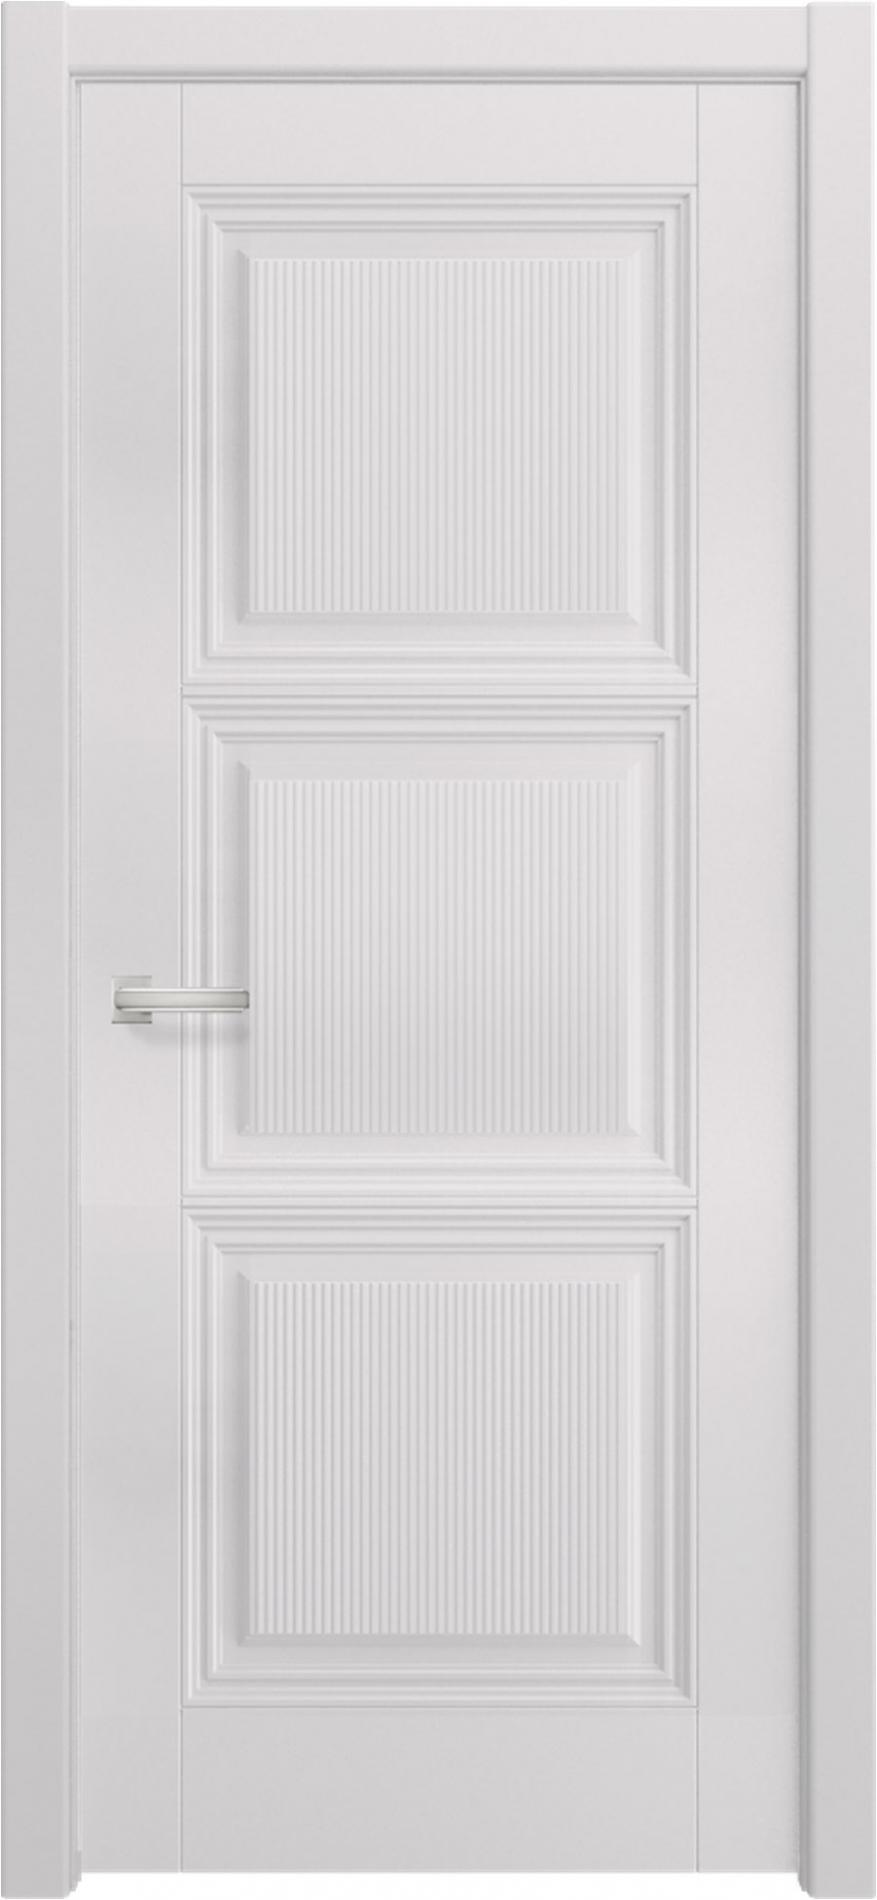 межкомнатные двери  Дариано Тринити 24W эмаль